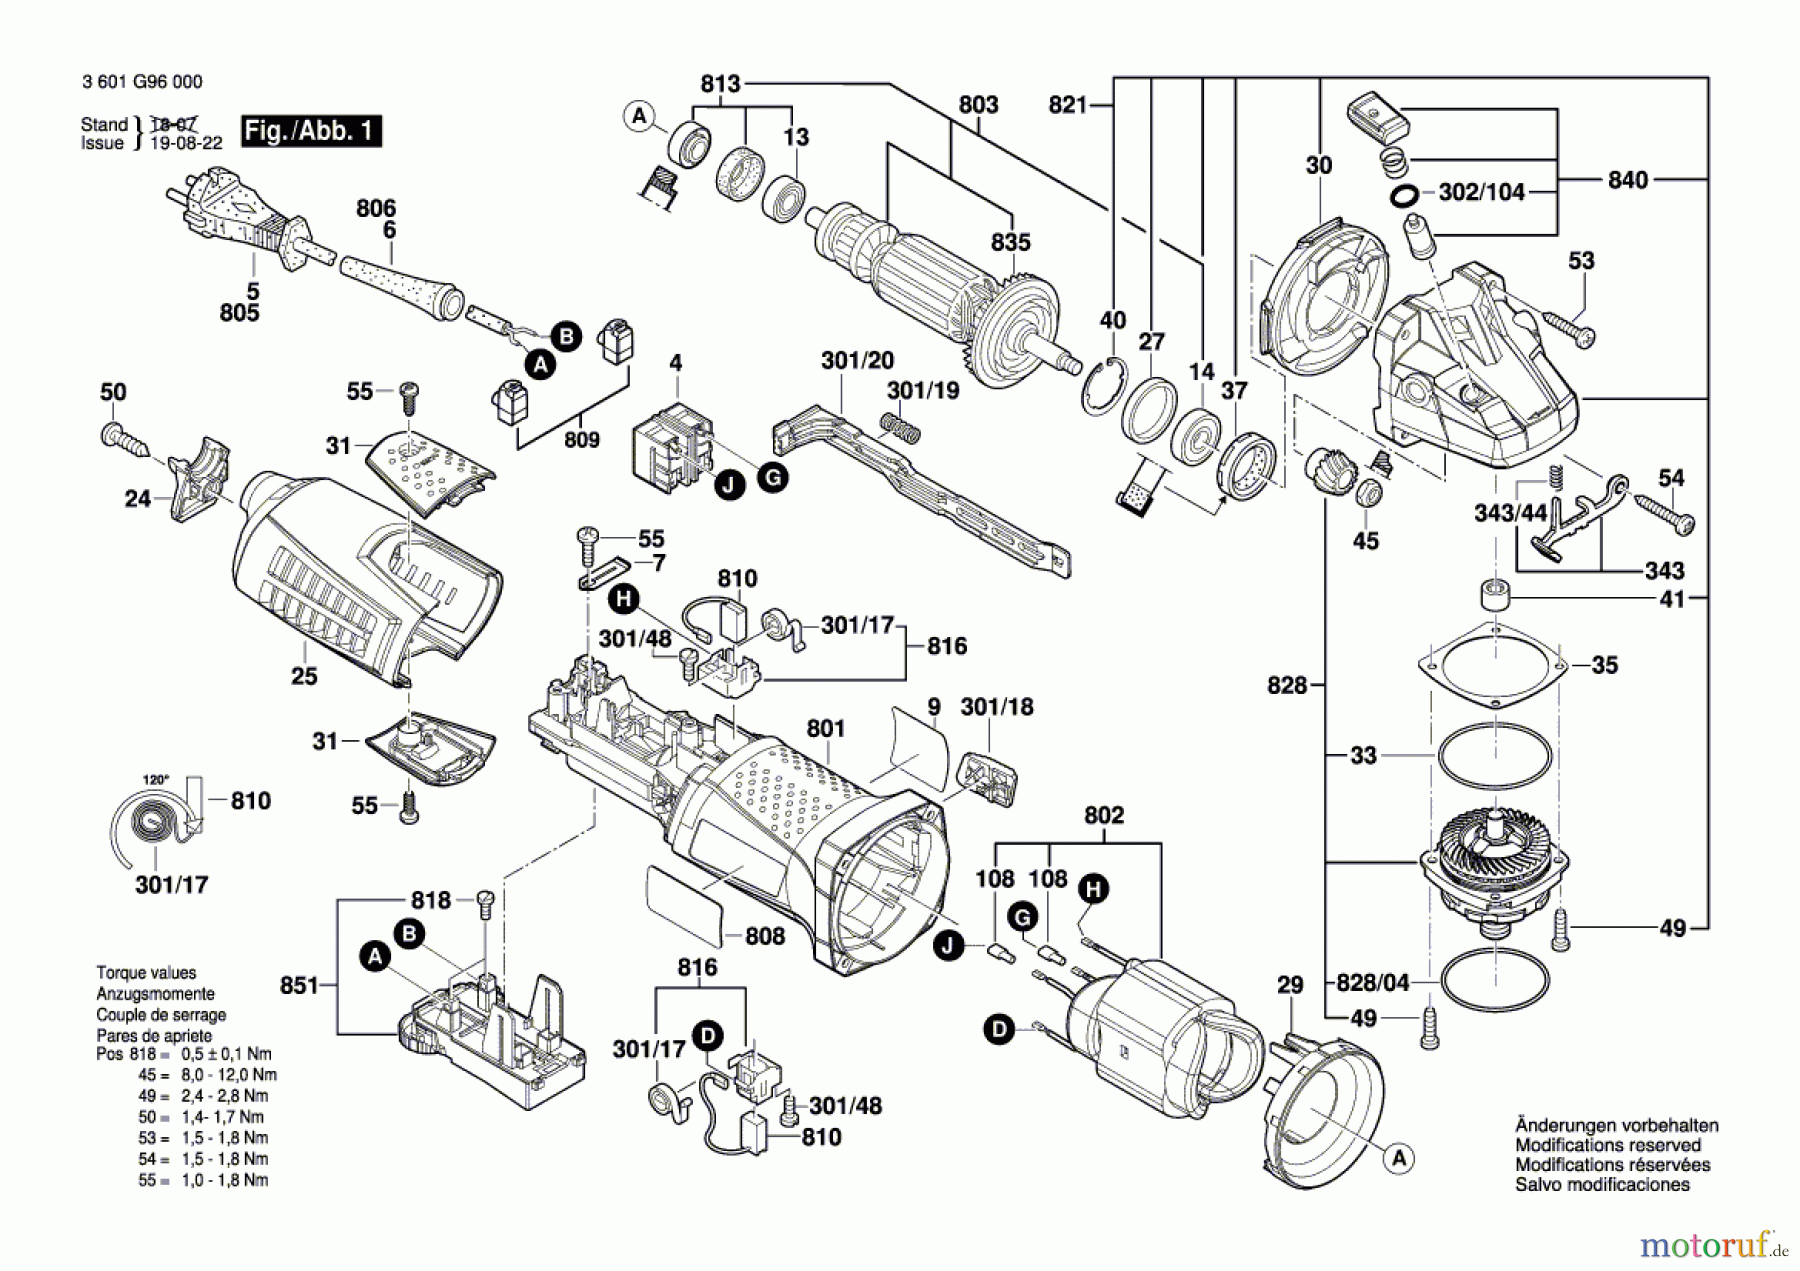  Bosch Werkzeug Winkelschleifer GWS 15-125 CIE Seite 1